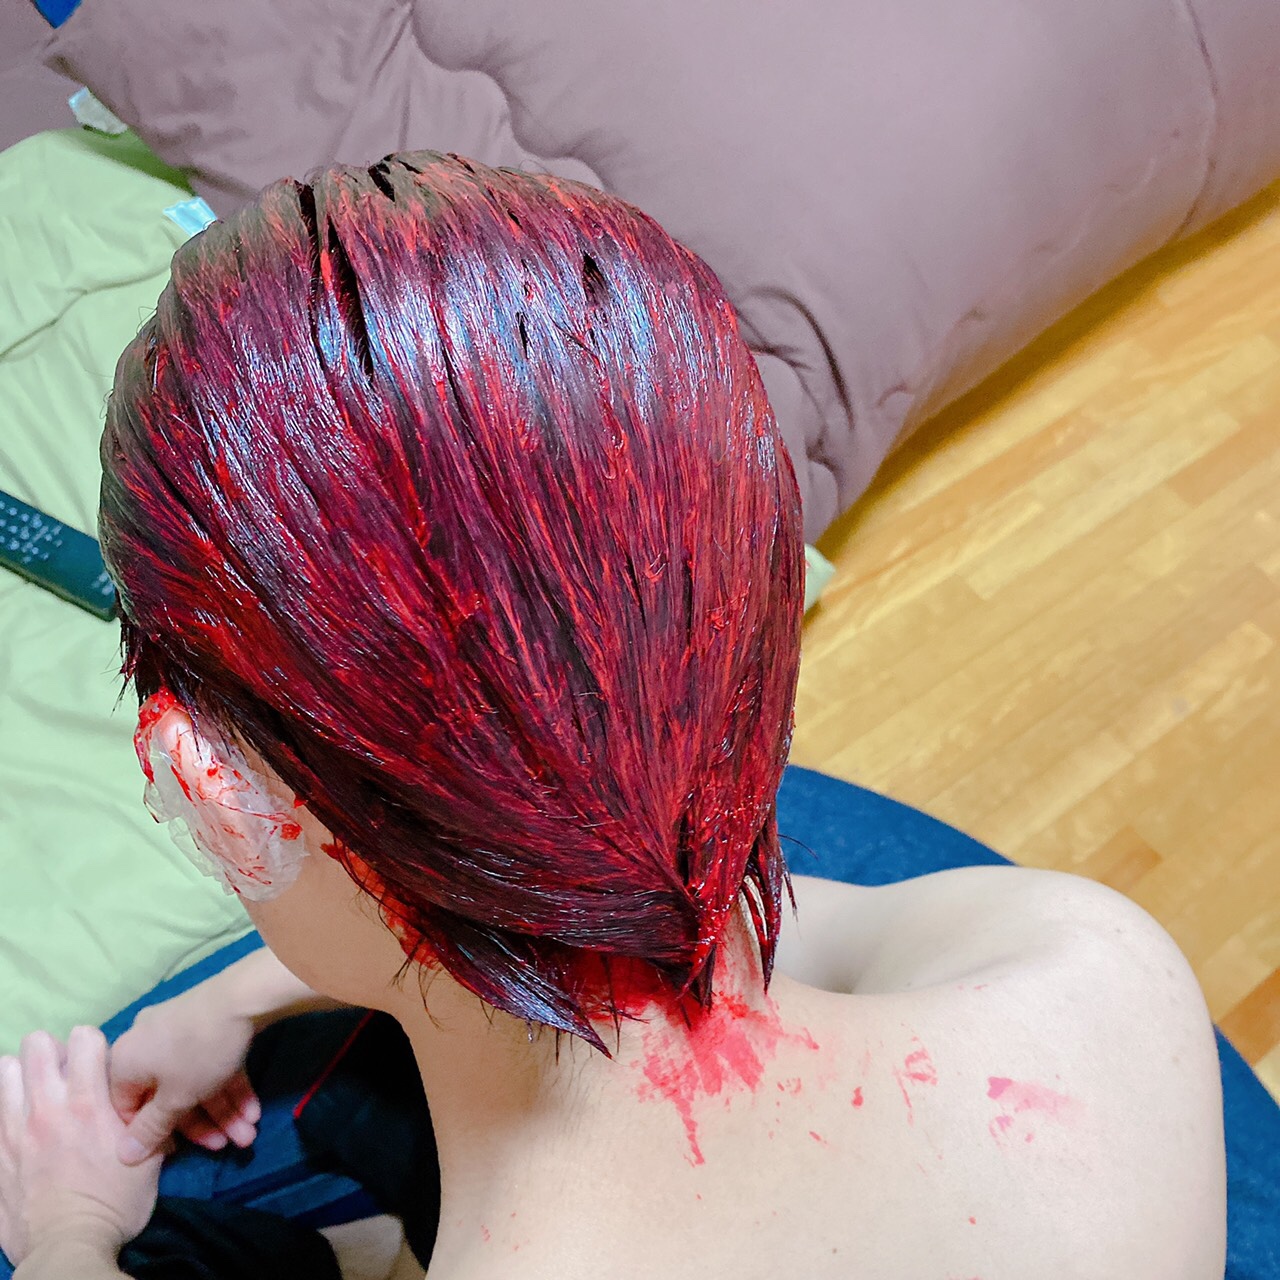 黒髪の状態からマニックパニック Manic Panic で赤髪にしようとした結果 ハルナスビのブログ